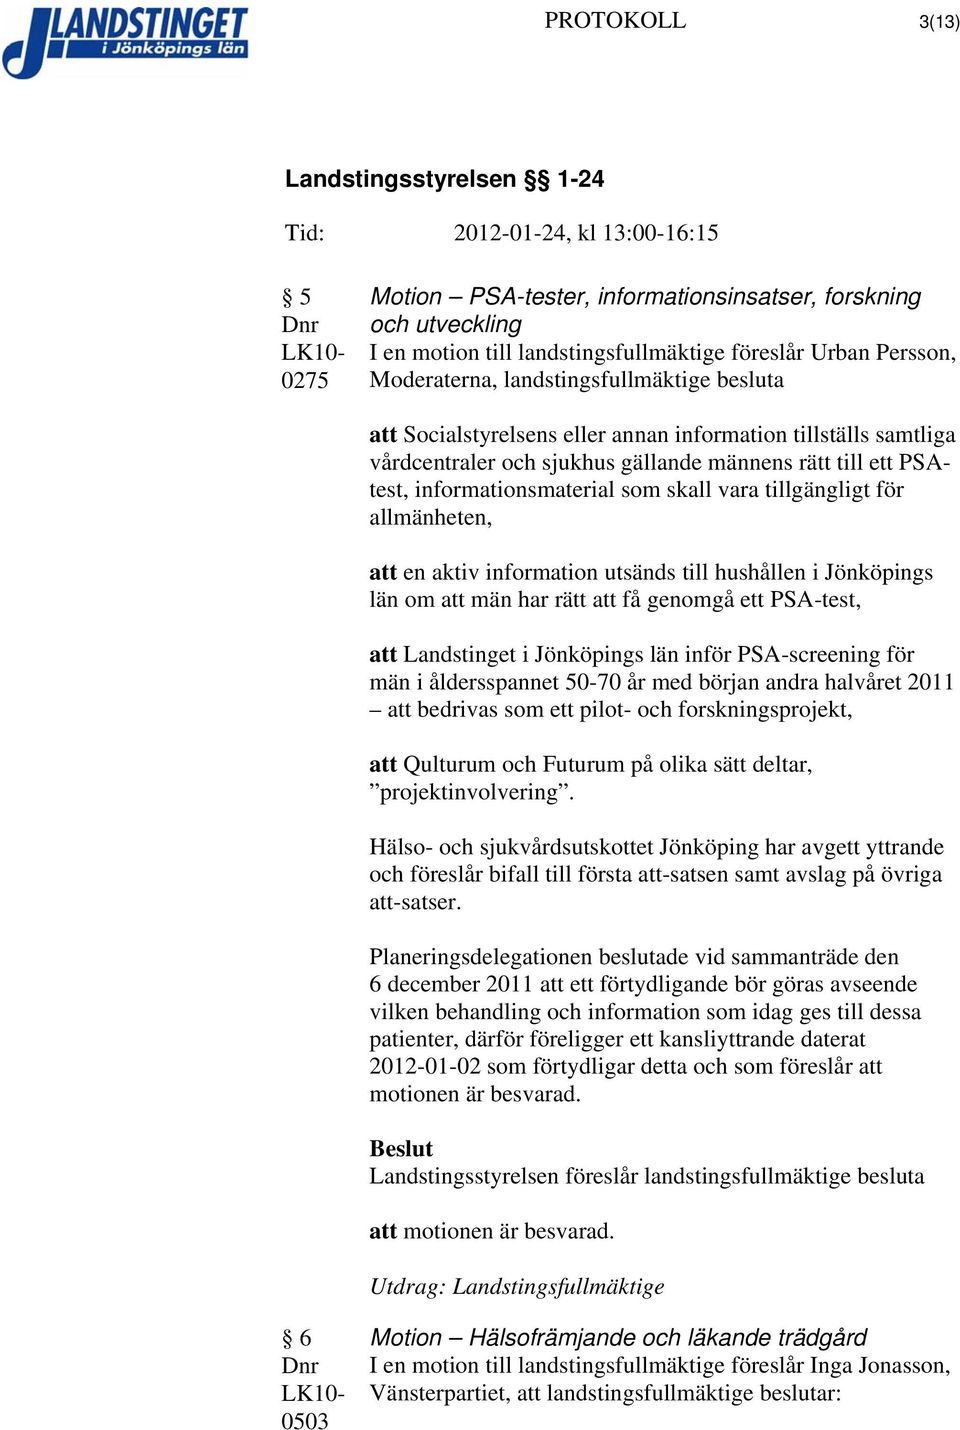 att en aktiv information utsänds till hushållen i Jönköpings län om att män har rätt att få genomgå ett PSA-test, att Landstinget i Jönköpings län inför PSA-screening för män i åldersspannet 50-70 år